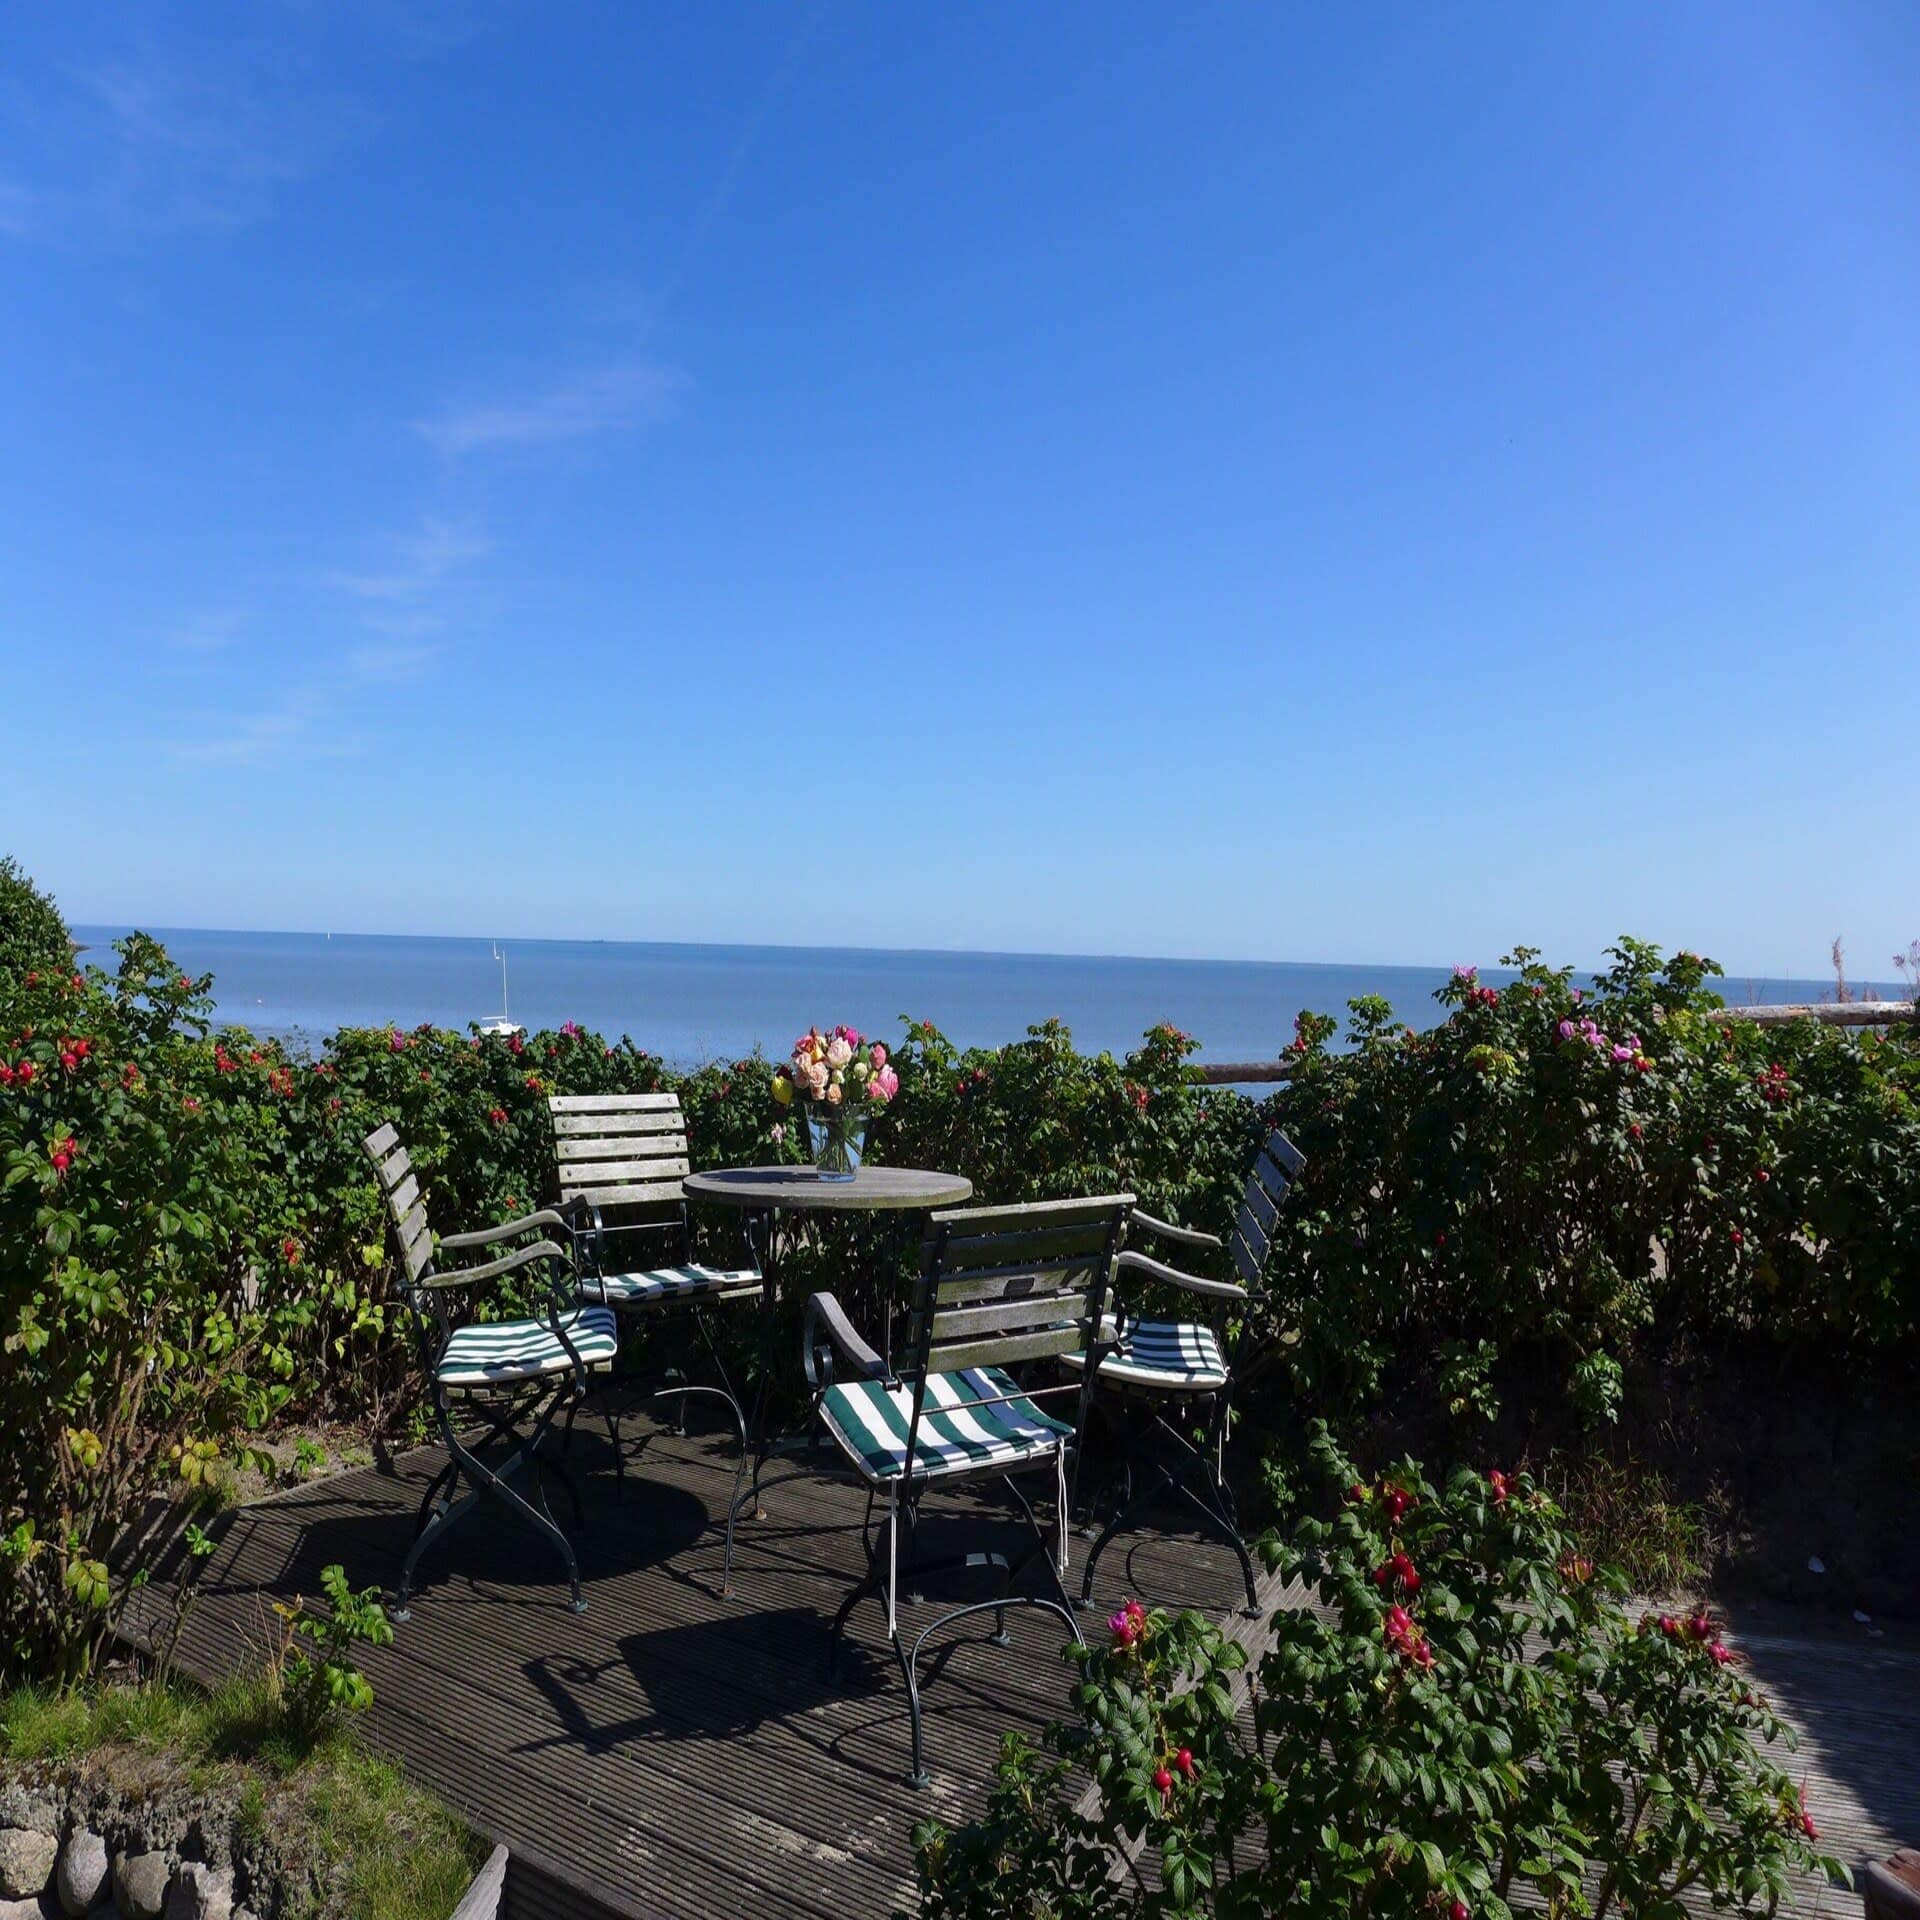 Terrasse mit Tisch und Stühlen in einem Garten mit Blick auf das Meer. 